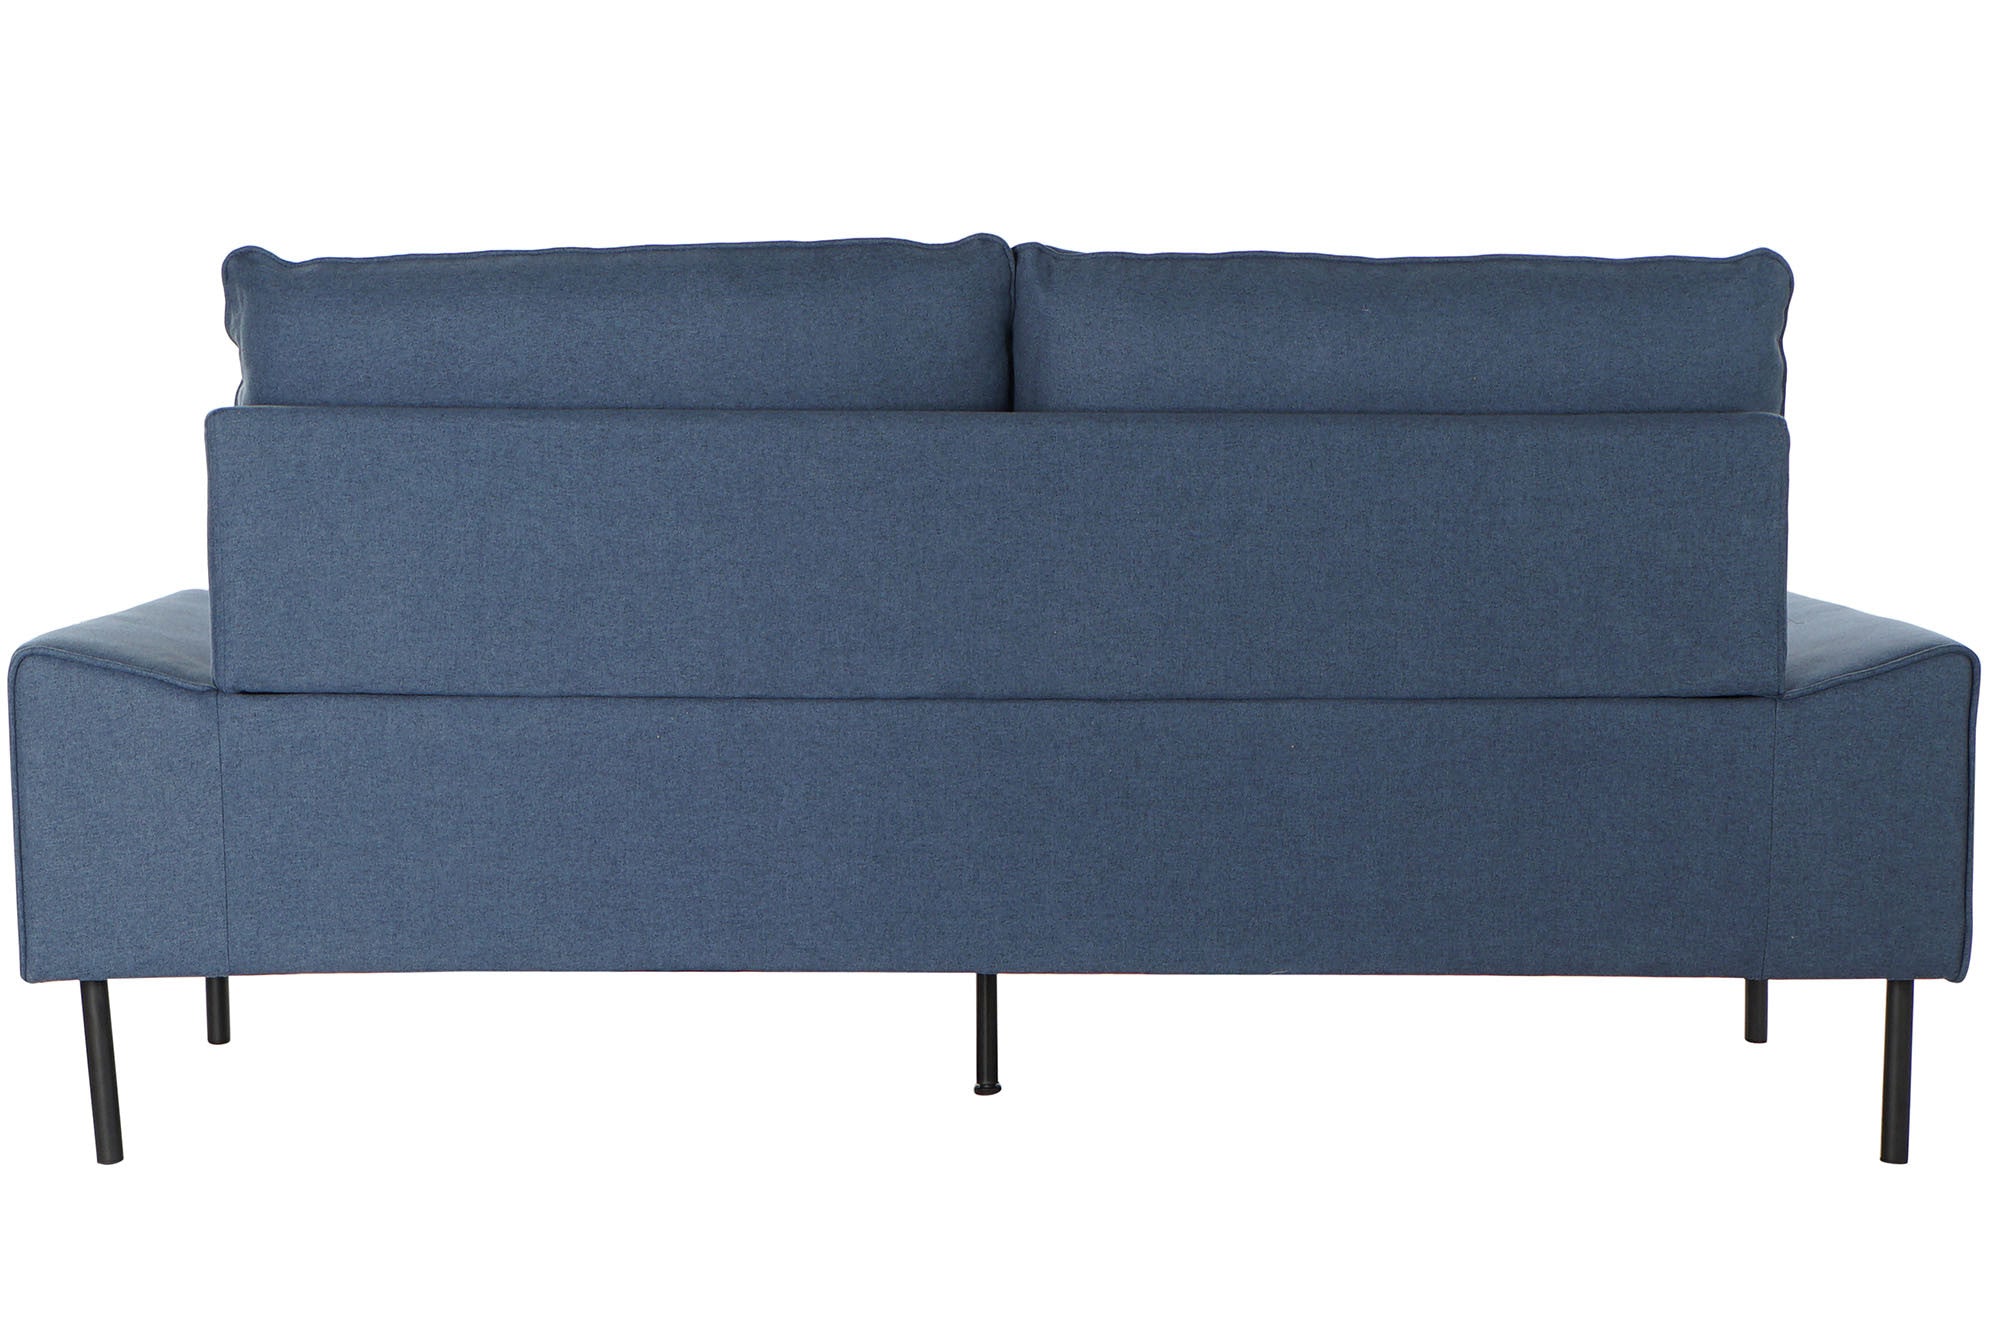 Sofá de Diseño Azul Marino Home Decor (197 x 82 x 90 cm)